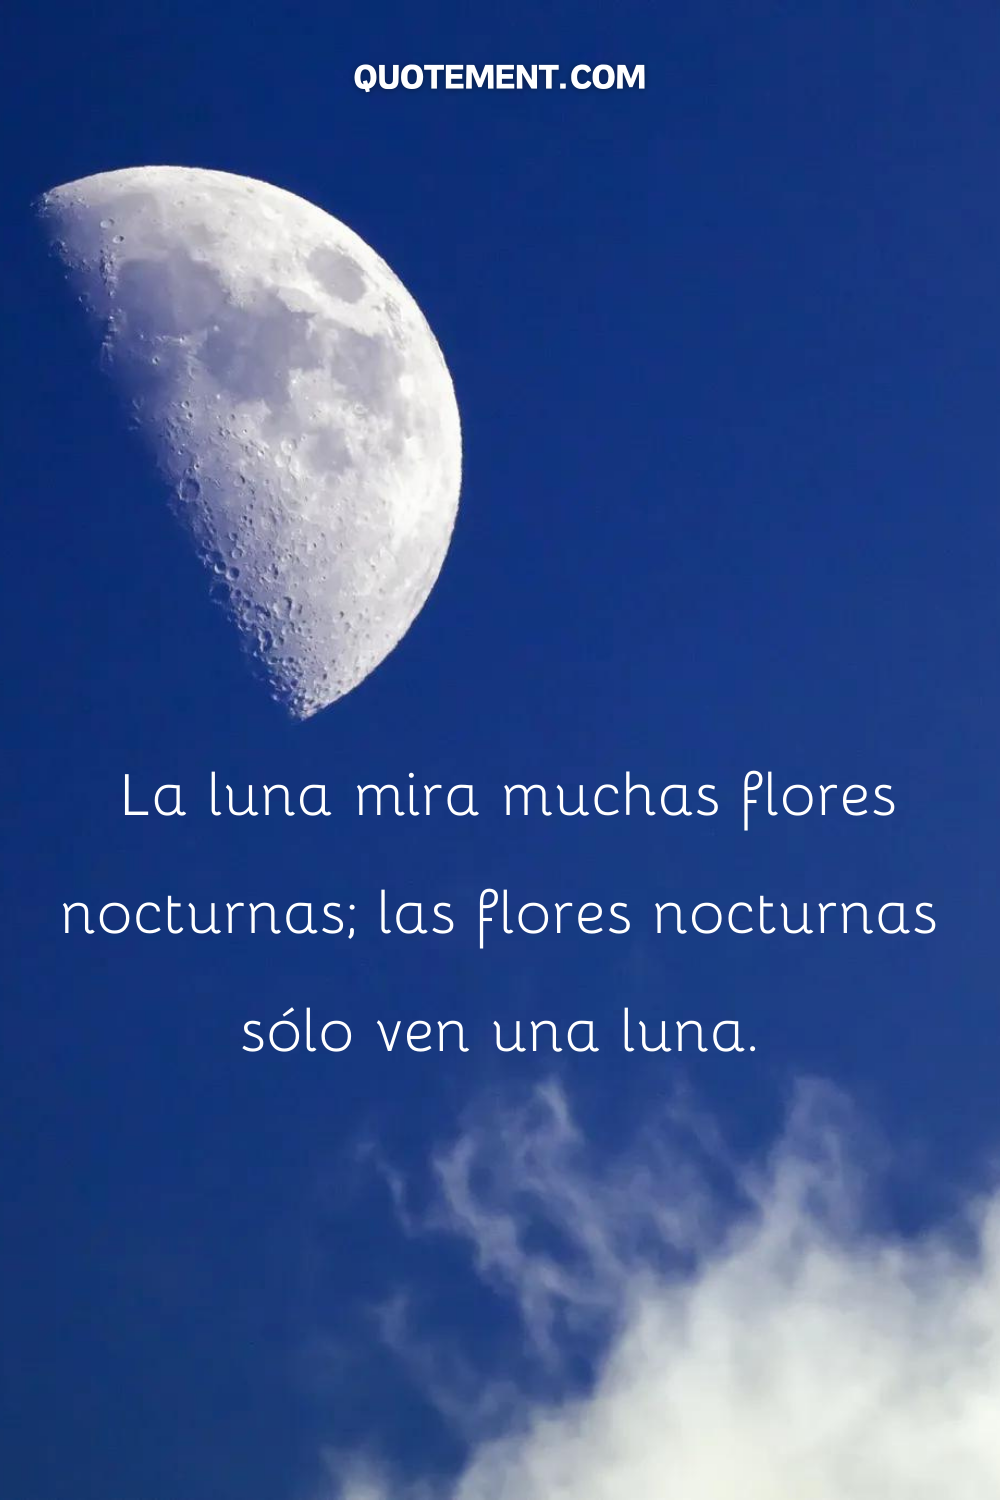 La luna mira muchas flores nocturnas; las flores nocturnas sólo ven una luna.